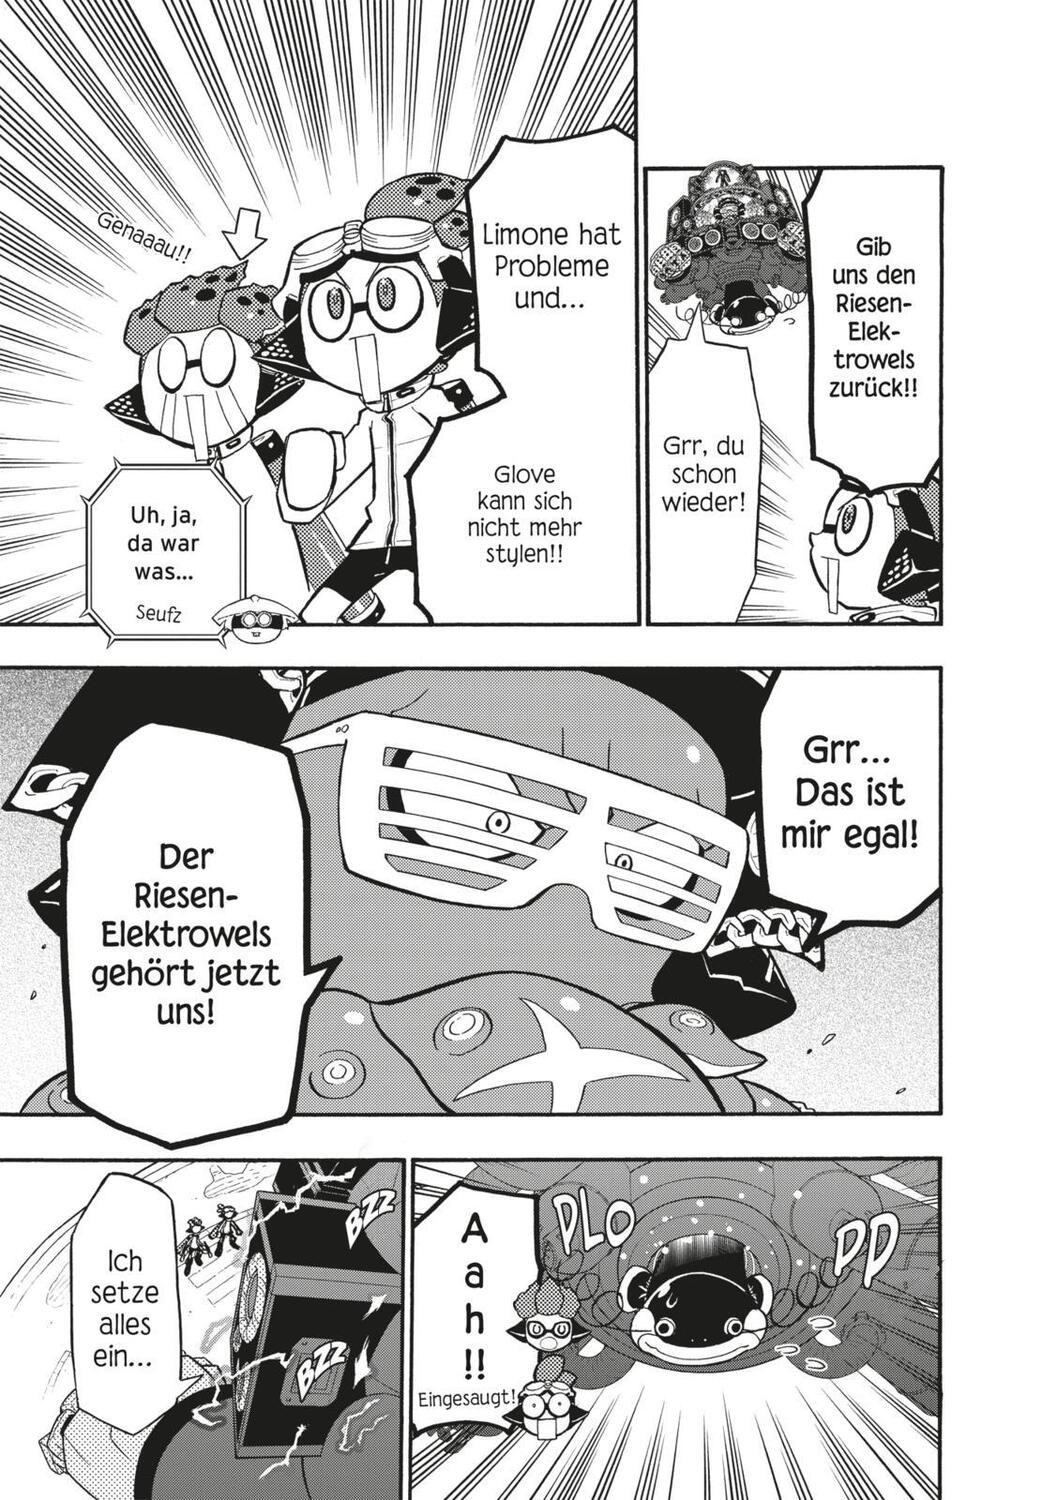 Bild: 9783551793881 | Splatoon 12 | Das Nintendo-Game als Manga! Ideal für Kinder und Gamer!